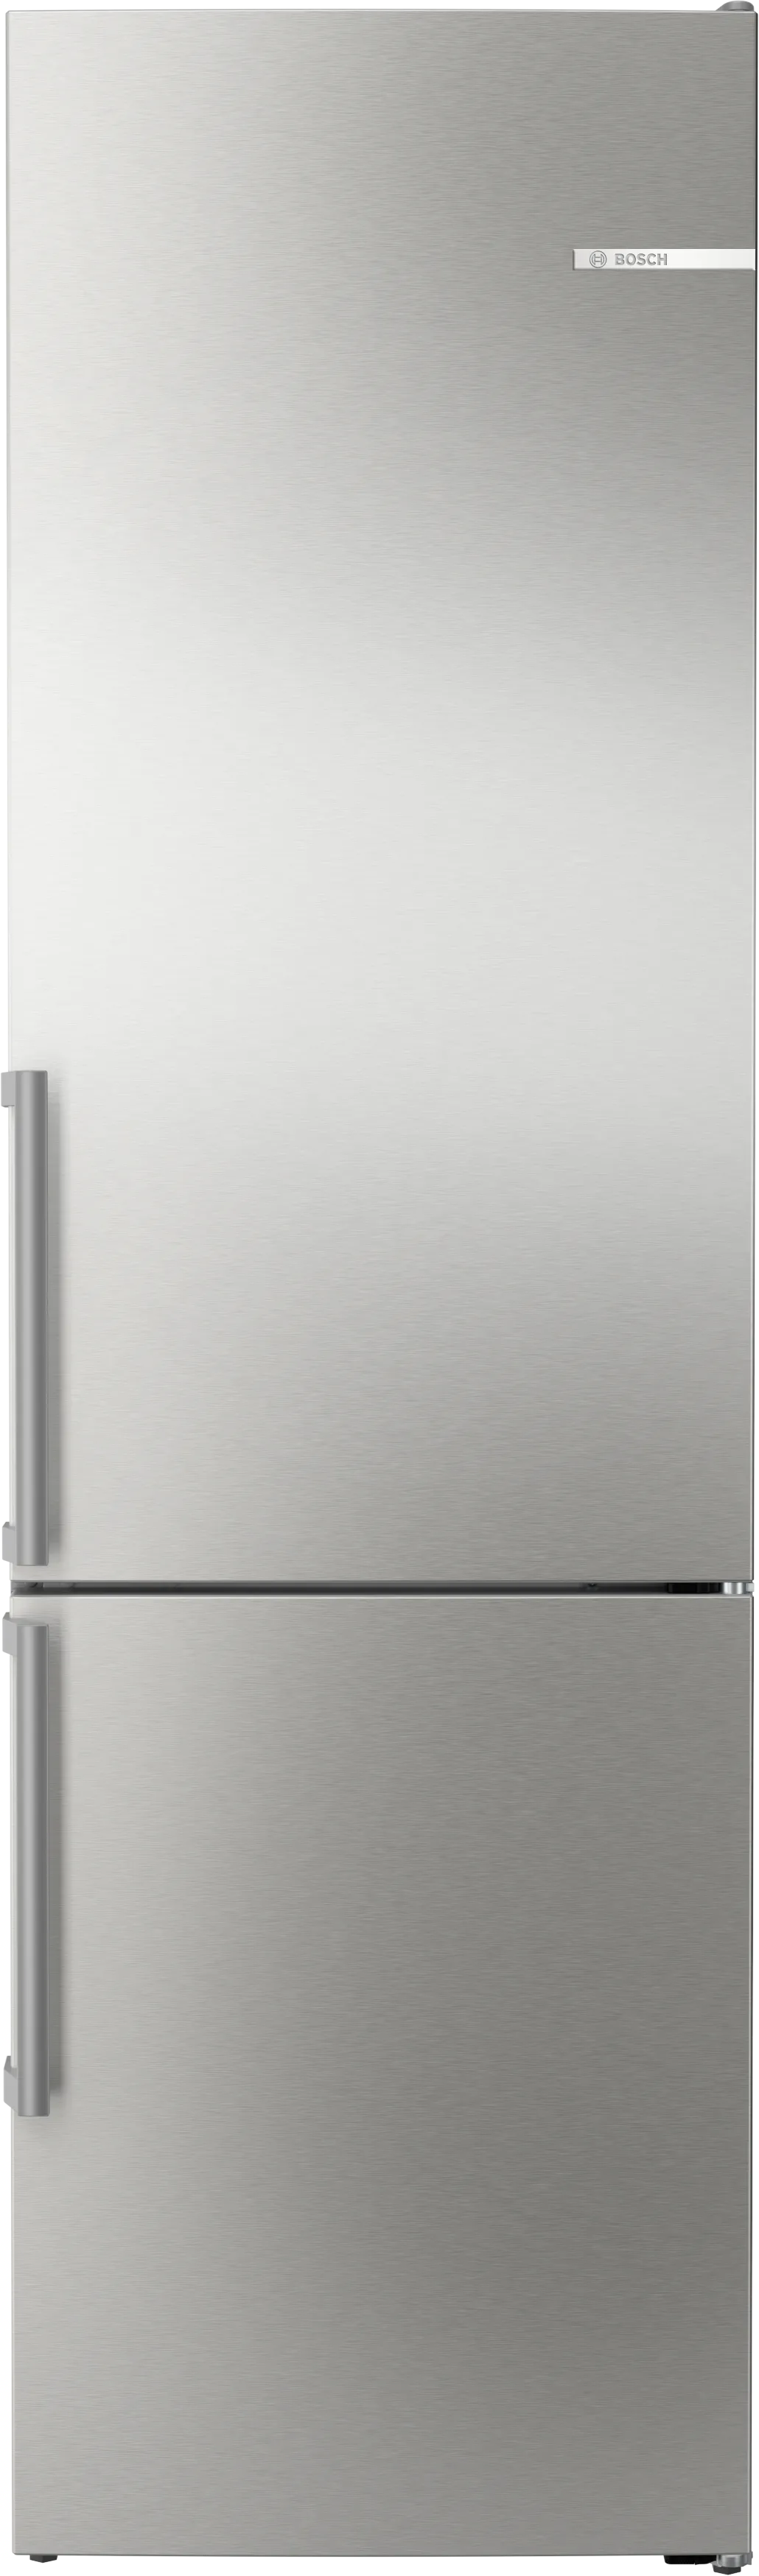 Serija 6 Samostojeći frižider sa zamrzivačem dole 203 x 60 cm Čelična mat obrada protiv otisaka prstiju 